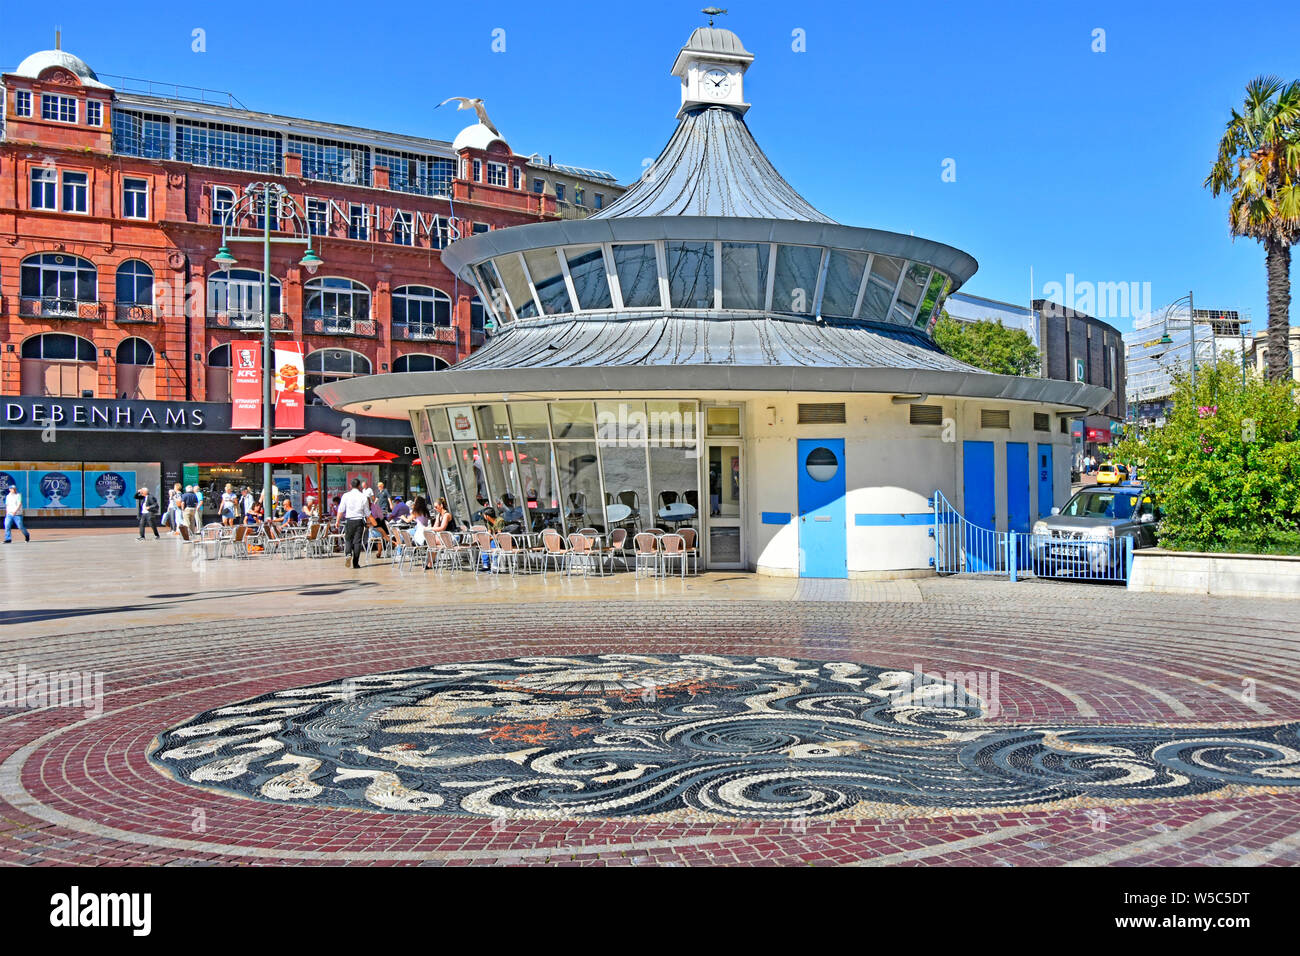 Centro di Bournemouth la piazza e mosaico di ciottoli nella pavimentazione con negozio Debenhams & persone seduti all'aperto a Obscura street cafe Dorset England Regno Unito Foto Stock